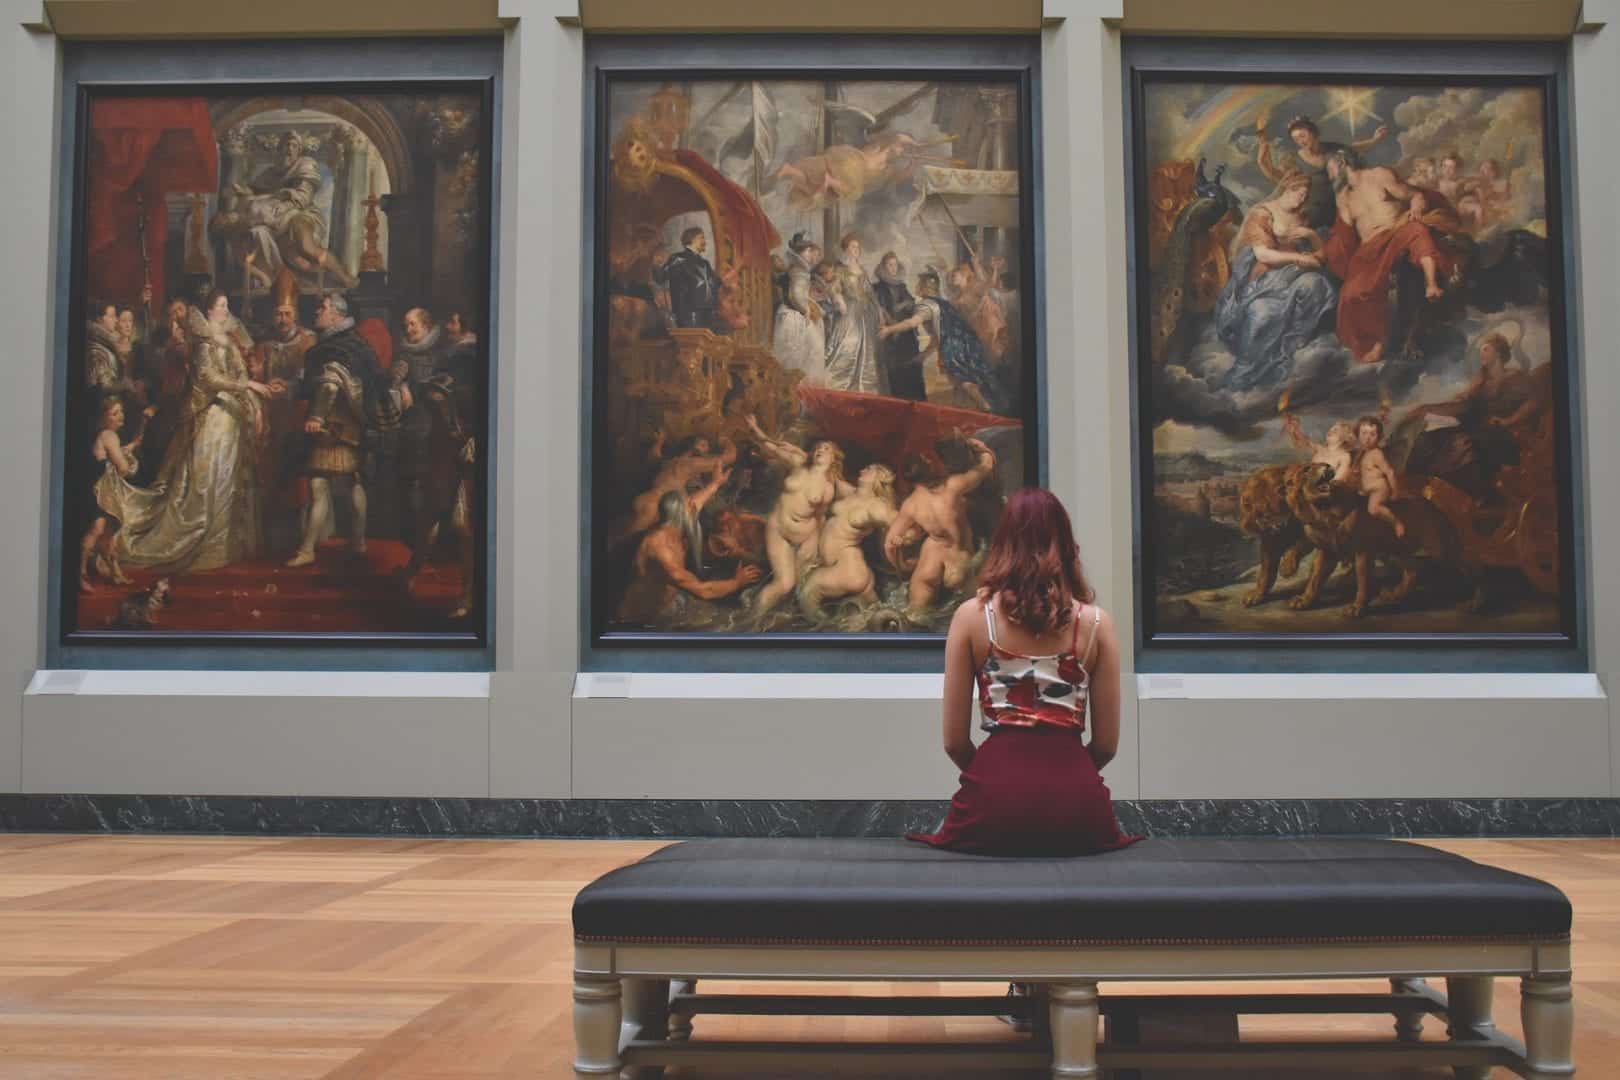 Confira agora as 15 obras de arte mais conhecidas do mundo